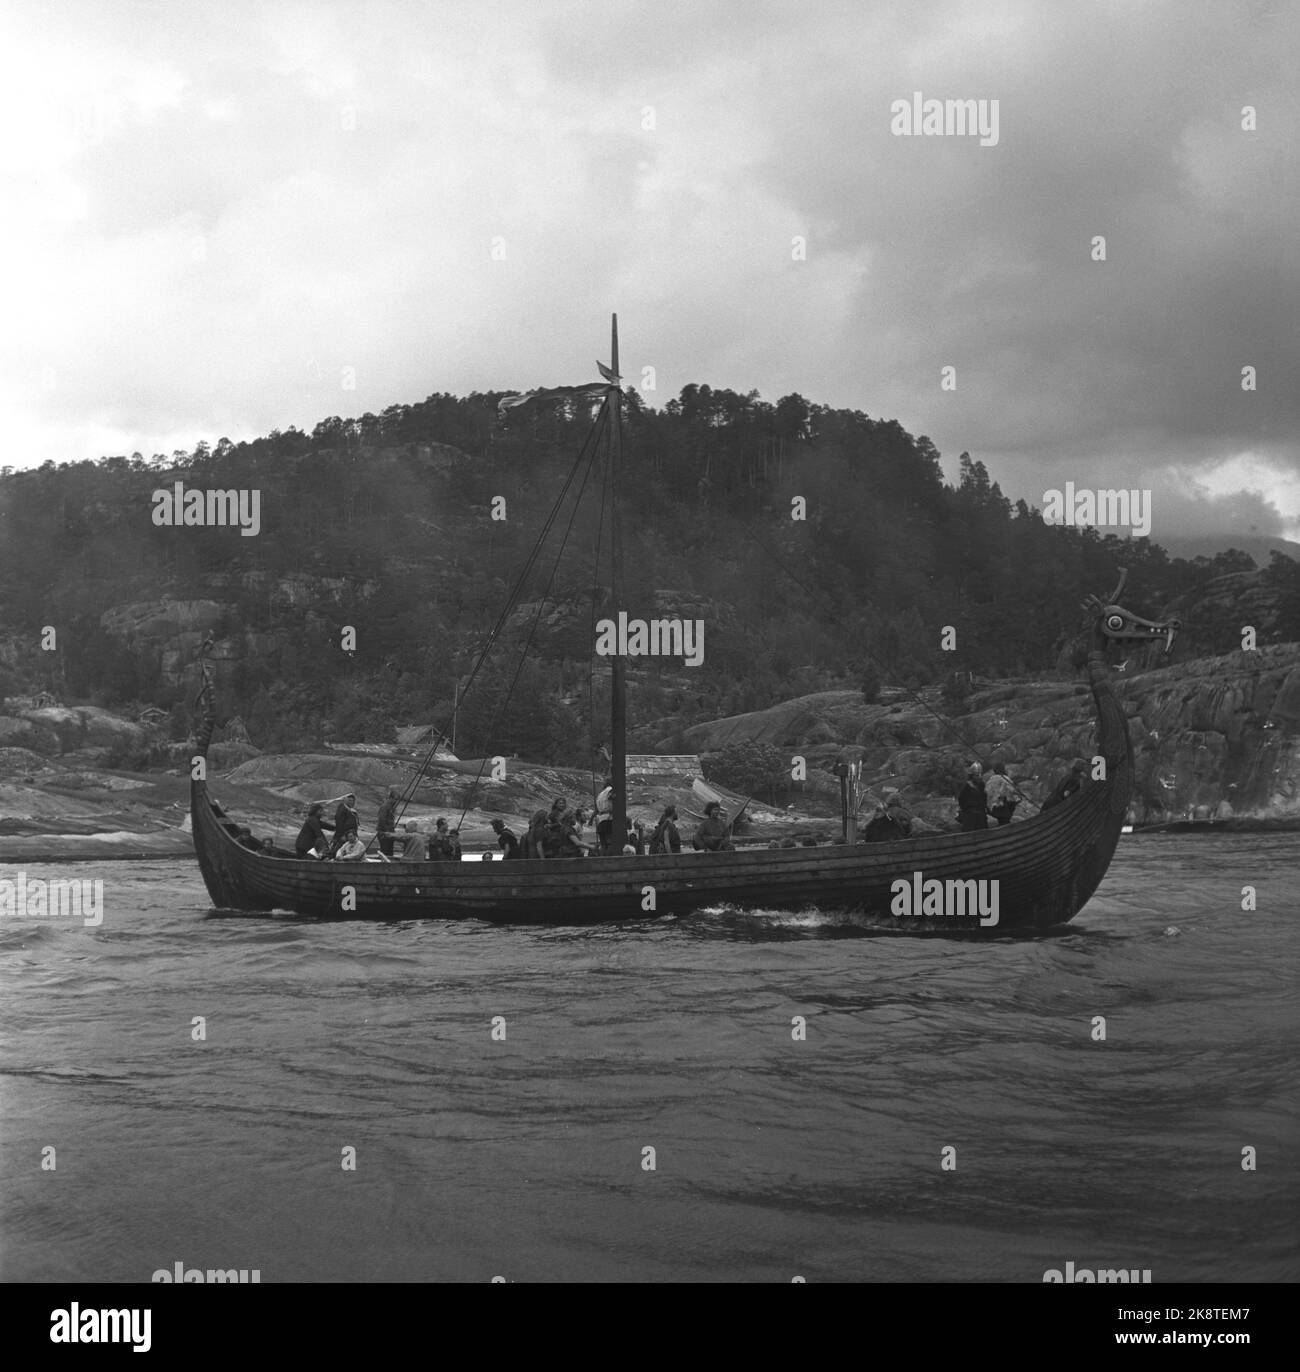 Oslo, 195705 la registrazione del film i Vichinghi (Vichinghi) sotto gli auspici di Richard Fleischer. È una nave vichinga che non è una copia corretta. Foto: Aage Storløkken / corrente Foto Stock